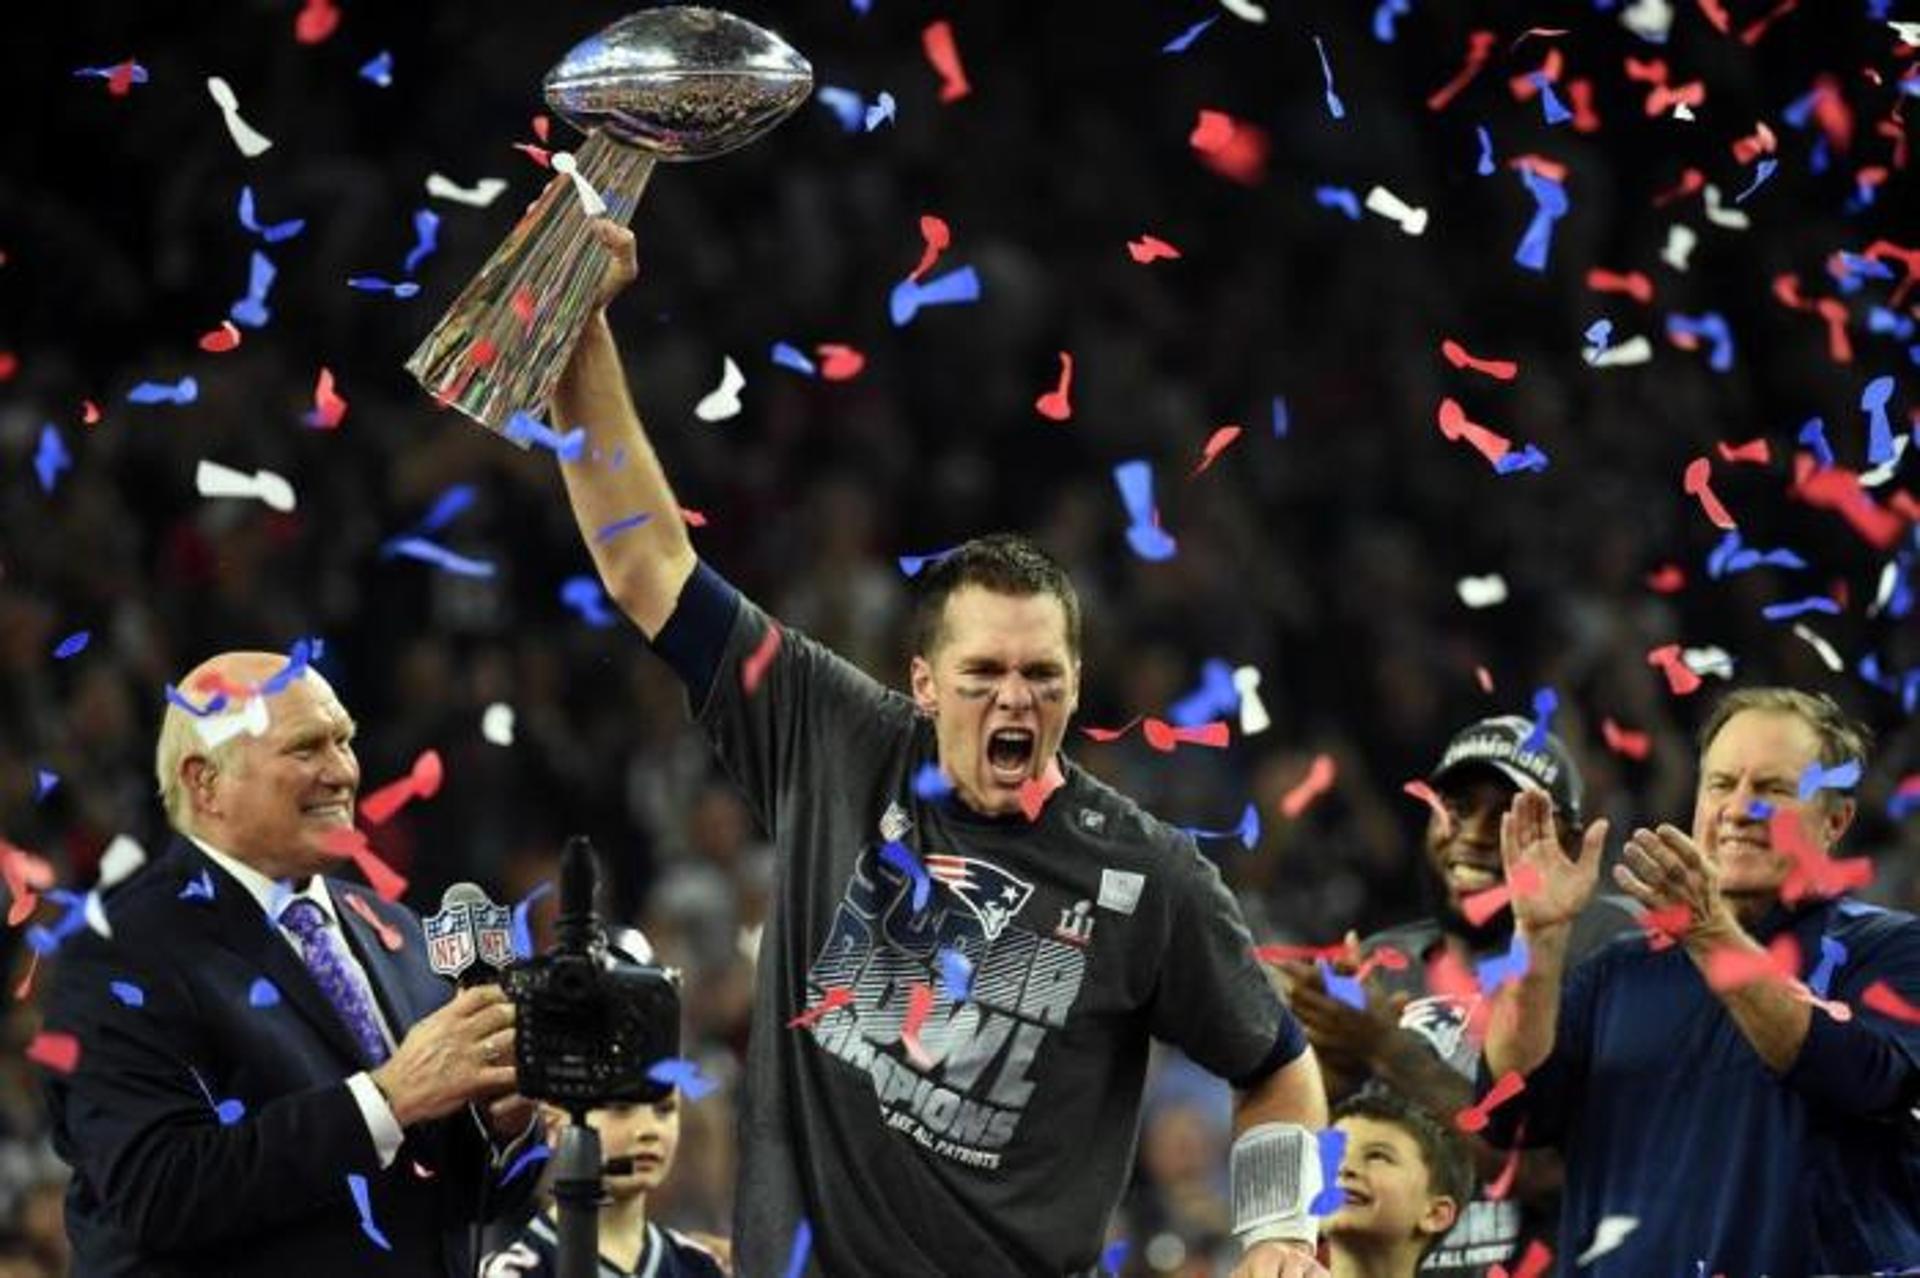 Apesar de ter sido o QB que comandou o New England Patriots até o título do Super Bowl, Tom Brady não foi o quarterback que passou para mais touchdowns em 2018. Veja a lista dos 10 QBs que mais passaram para TD na última temporada.